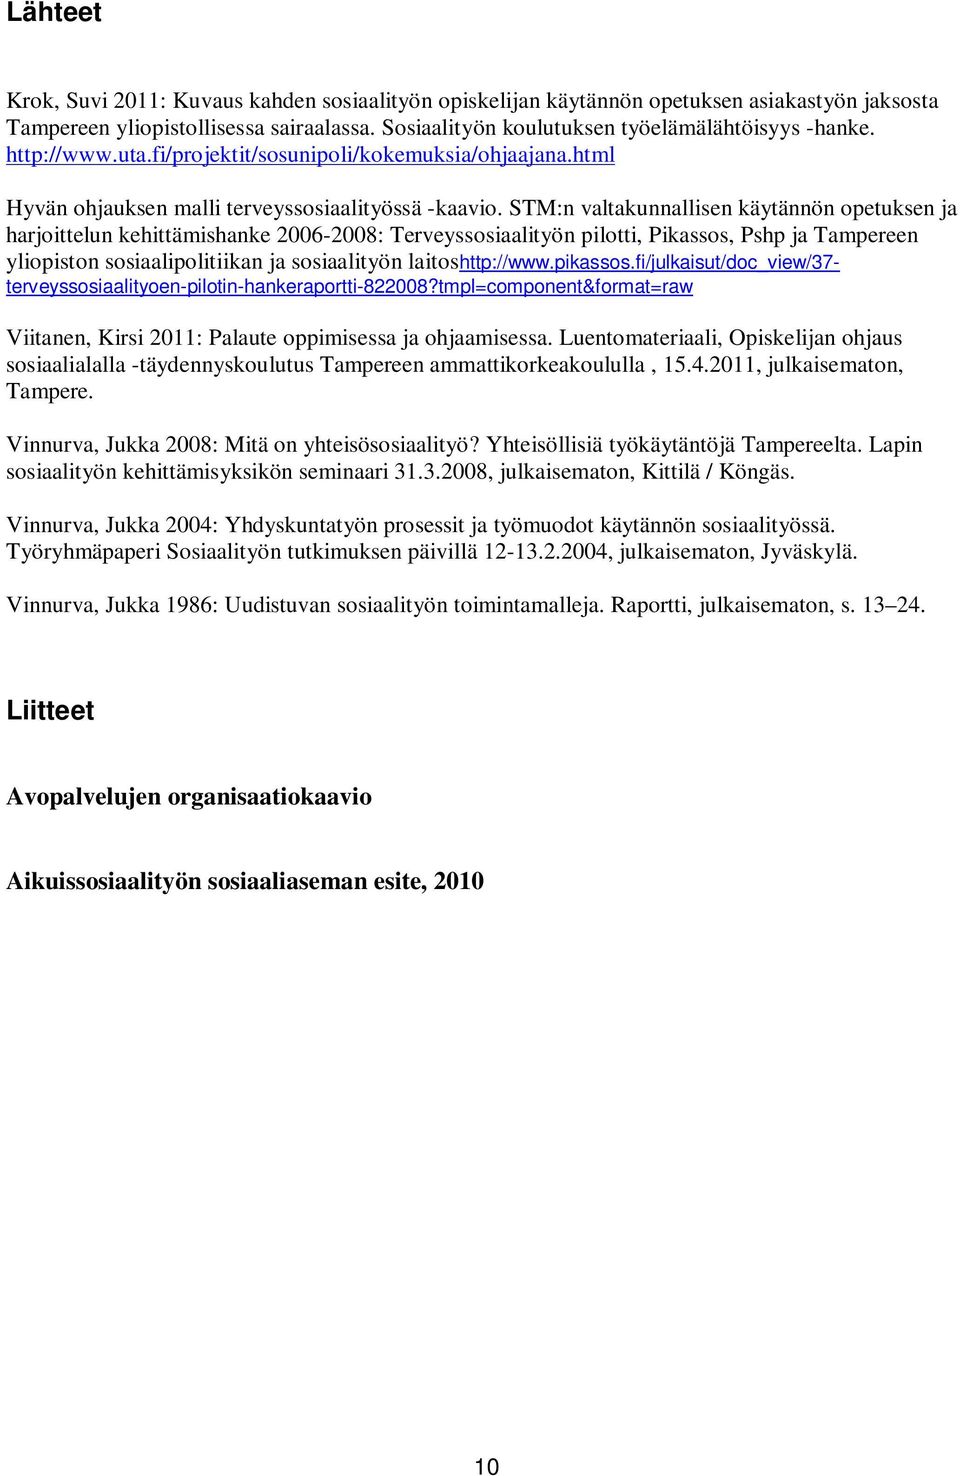 STM:n valtakunnallisen käytännön opetuksen ja harjoittelun kehittämishanke 2006-2008: Terveyssosiaalityön pilotti, Pikassos, Pshp ja Tampereen yliopiston sosiaalipolitiikan ja sosiaalityön